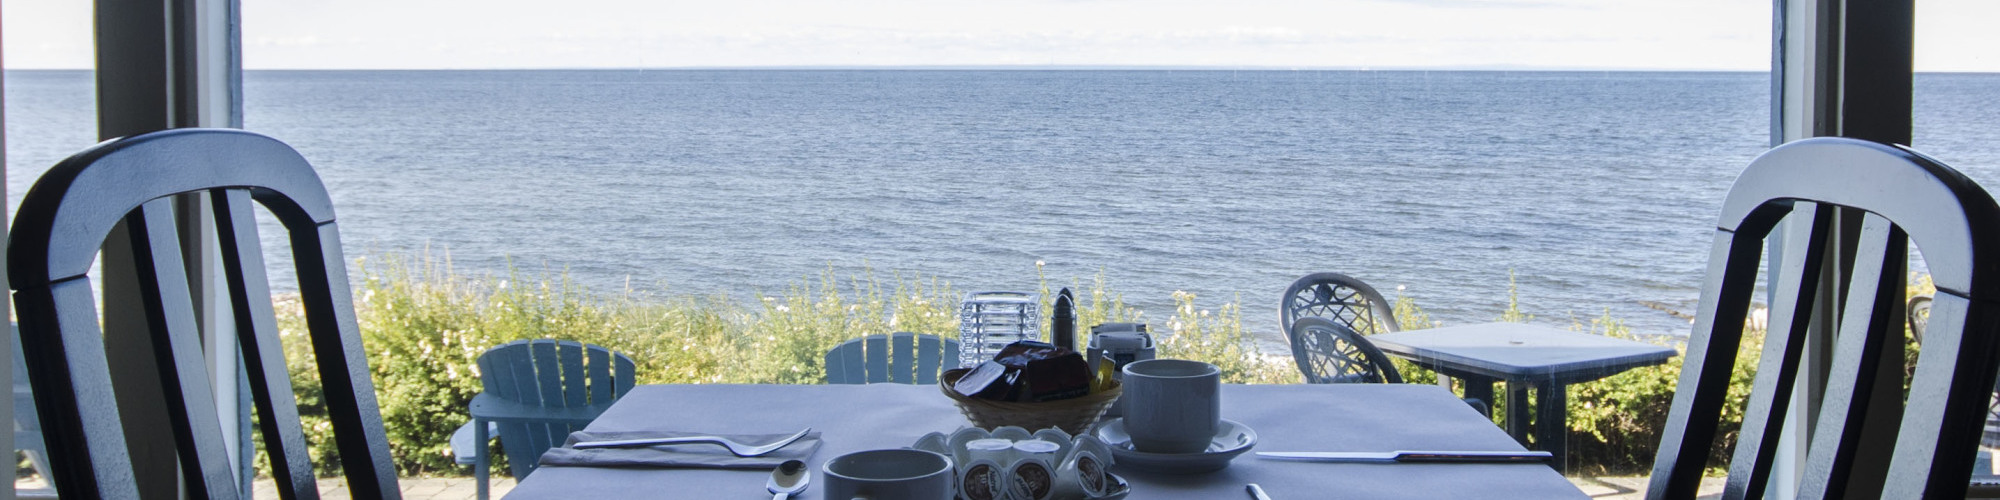 Restaurant Le côté mer, Riôtel Bonaventure, vue sur la mer